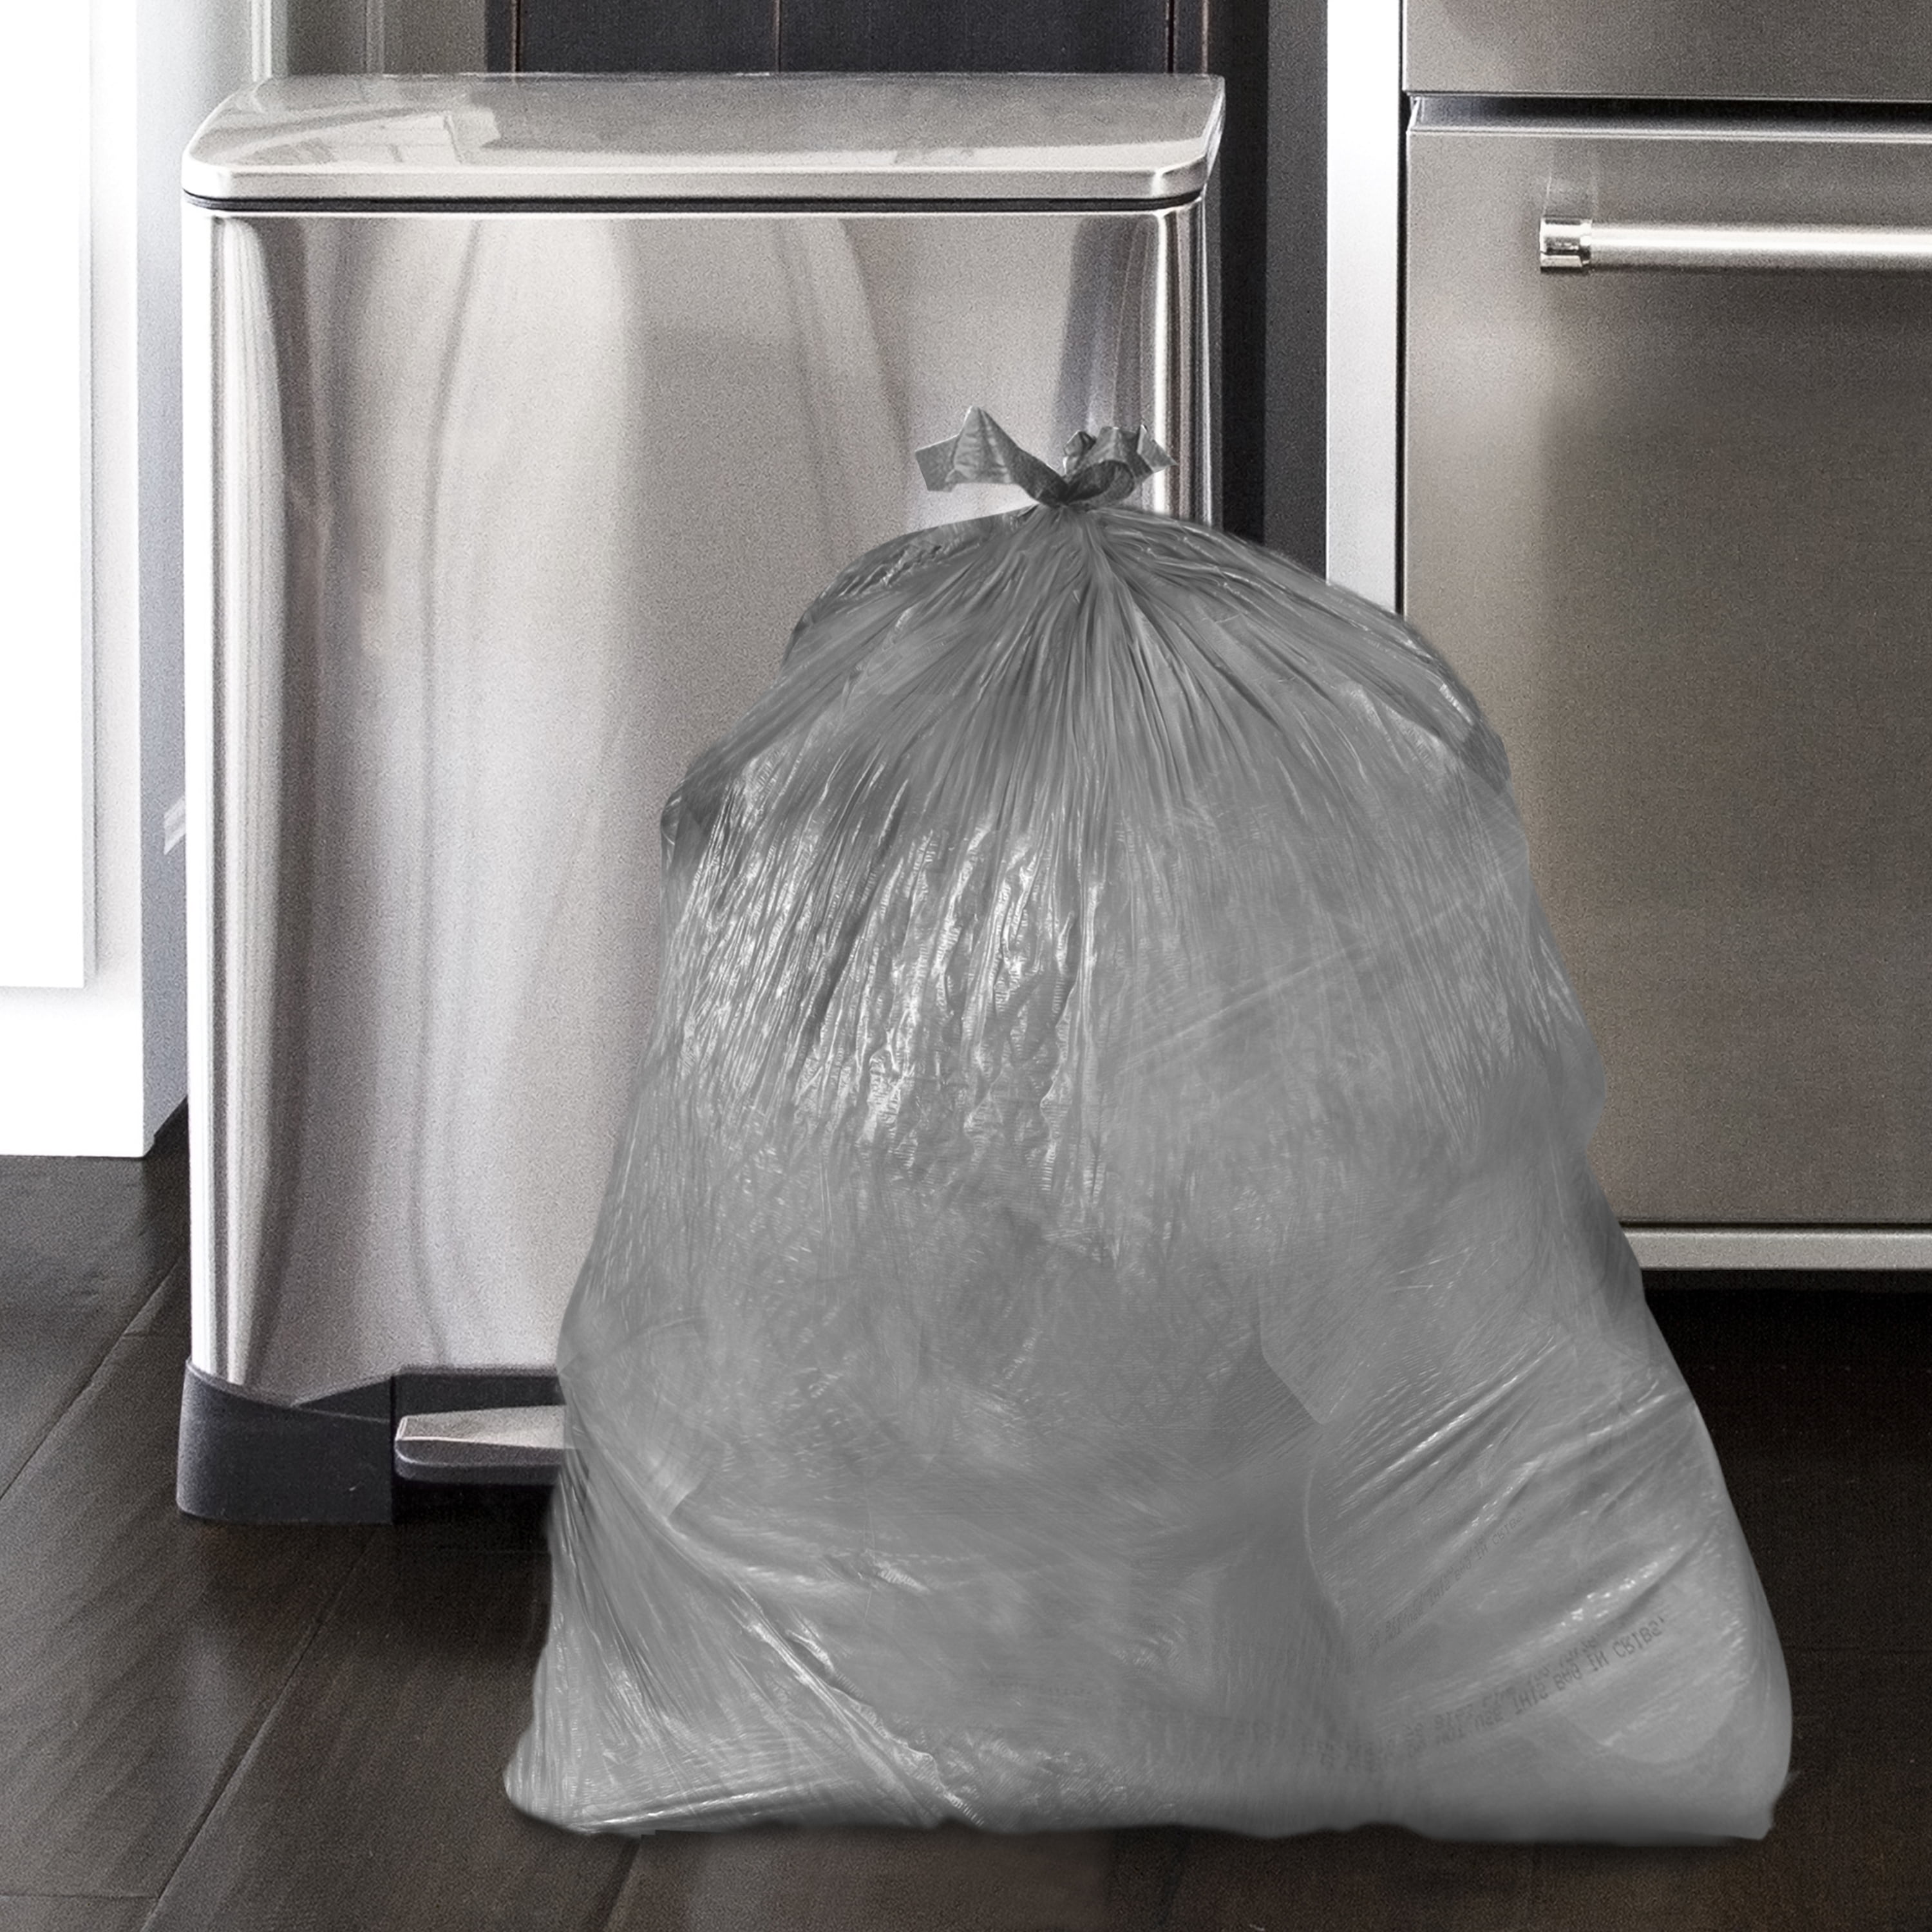 Color Scents - Medium Trash Bags, Twist Tie - 8 Gallon Trash Bags, 40 Count  - Laundry & Office Trash Bag, Scented Garbage Bag, Cream Bag in Vanilla